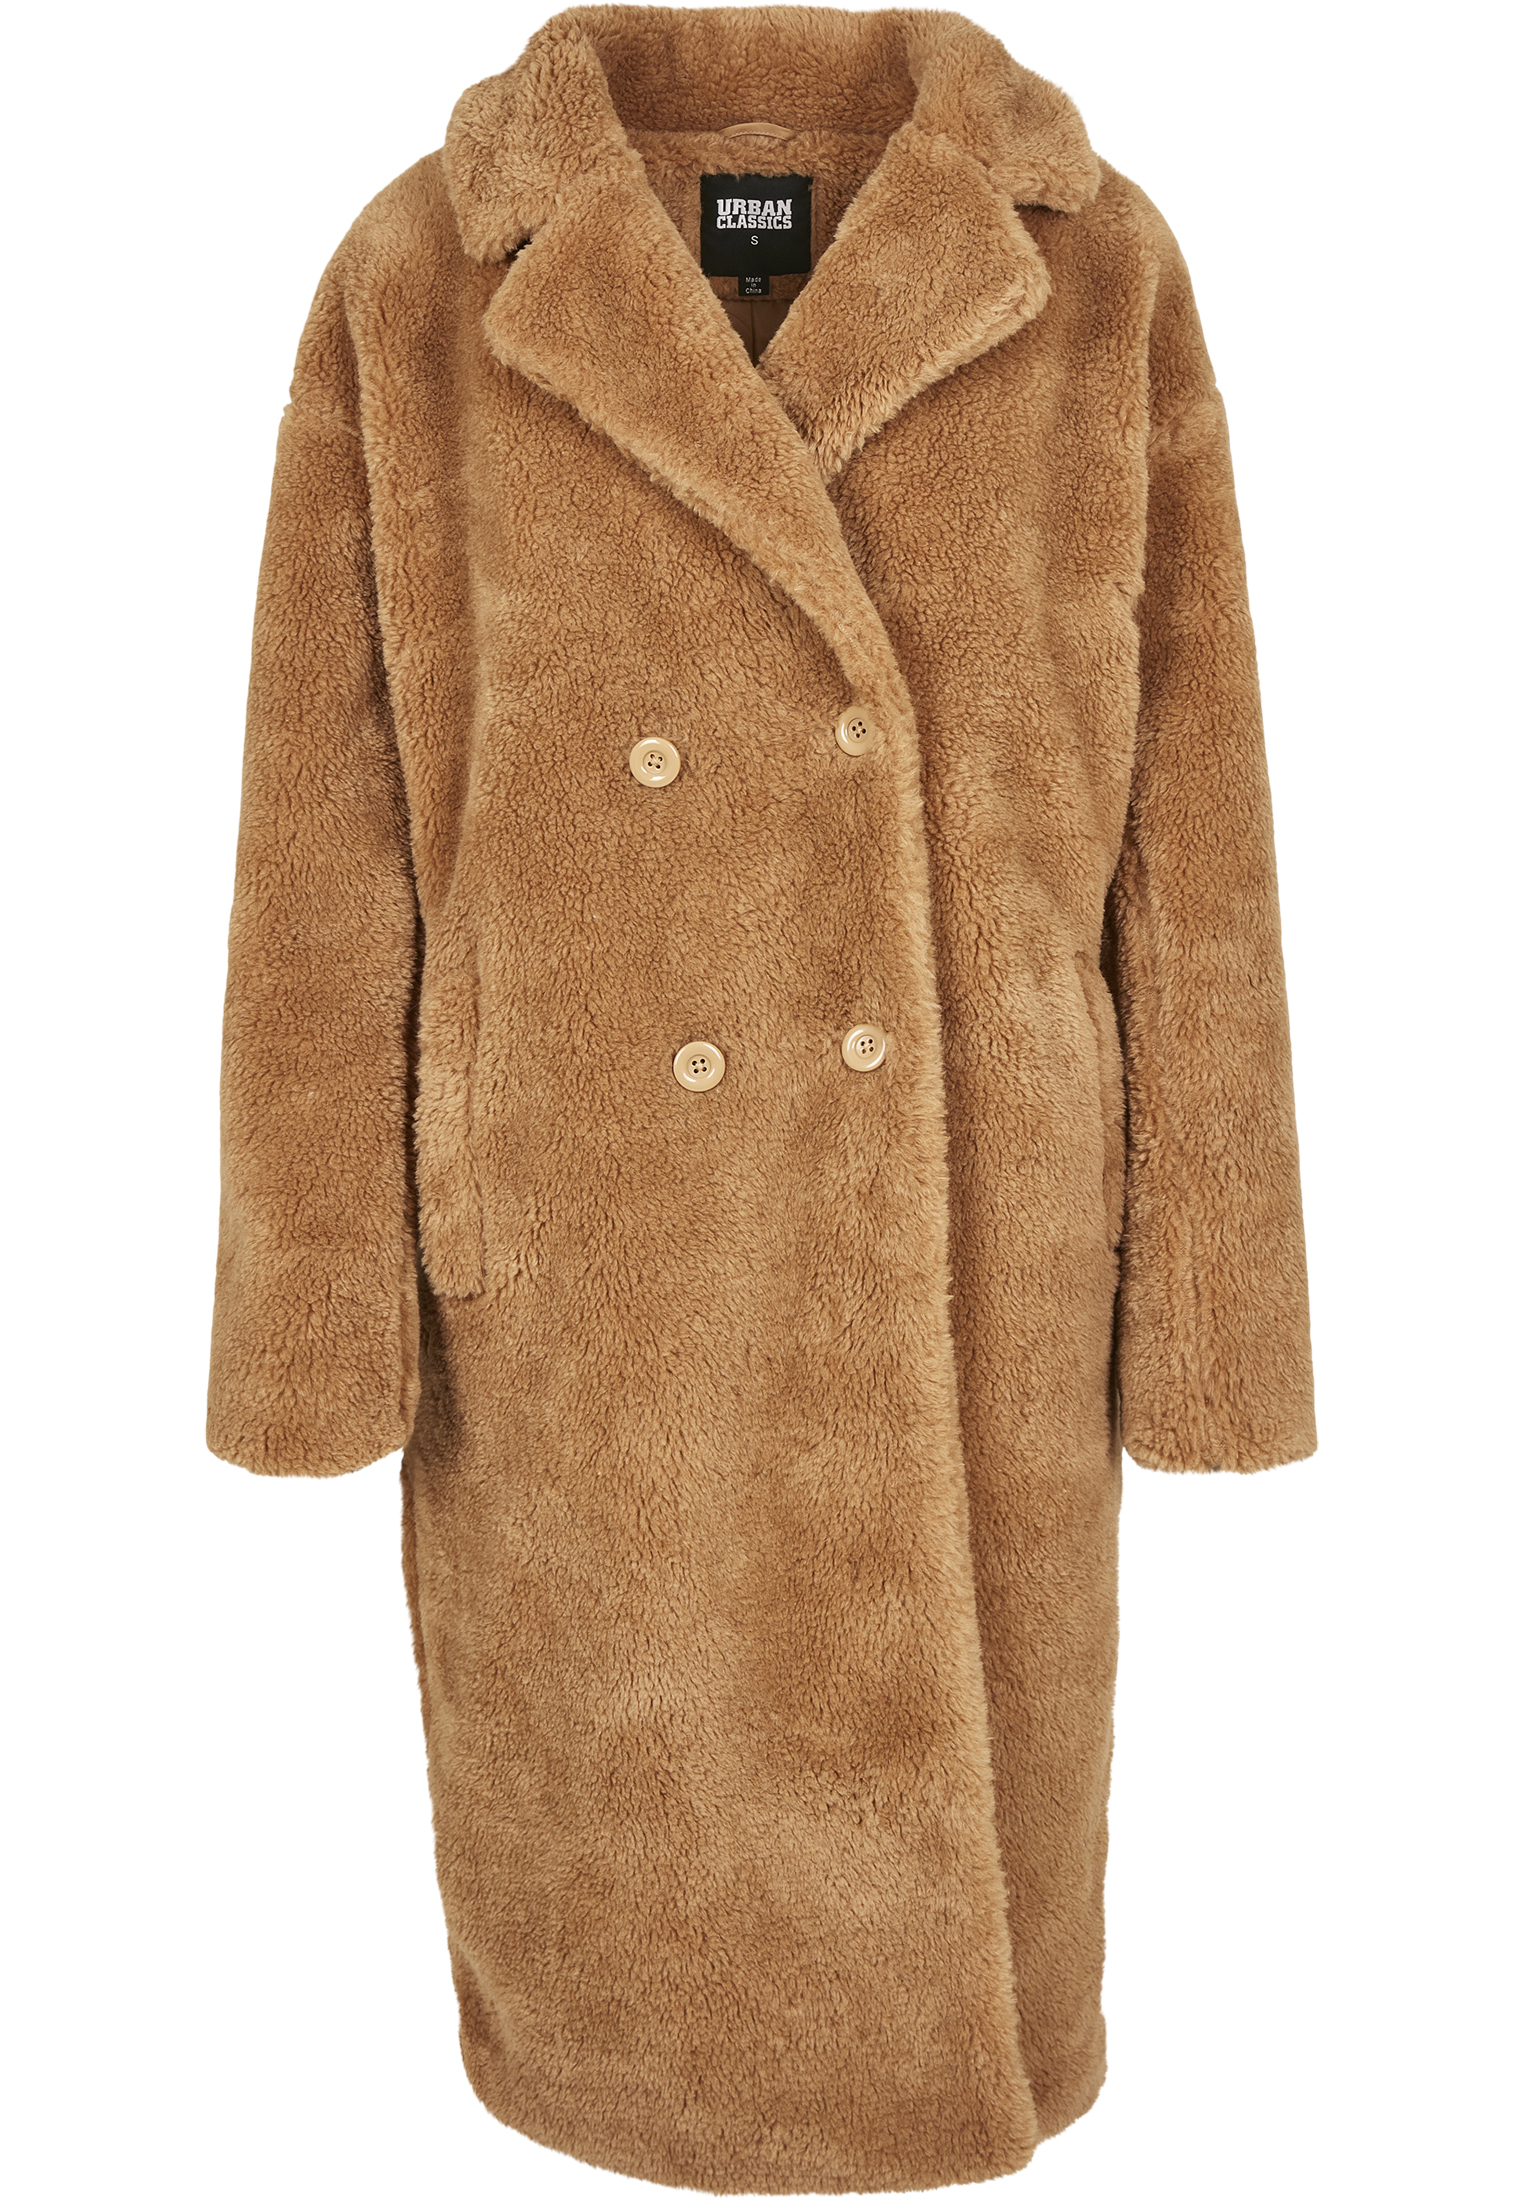 Visita lo Store di Urban ClassicsUrban Classics Ladies Oversized Teddy Coat Giubbotto Donna 